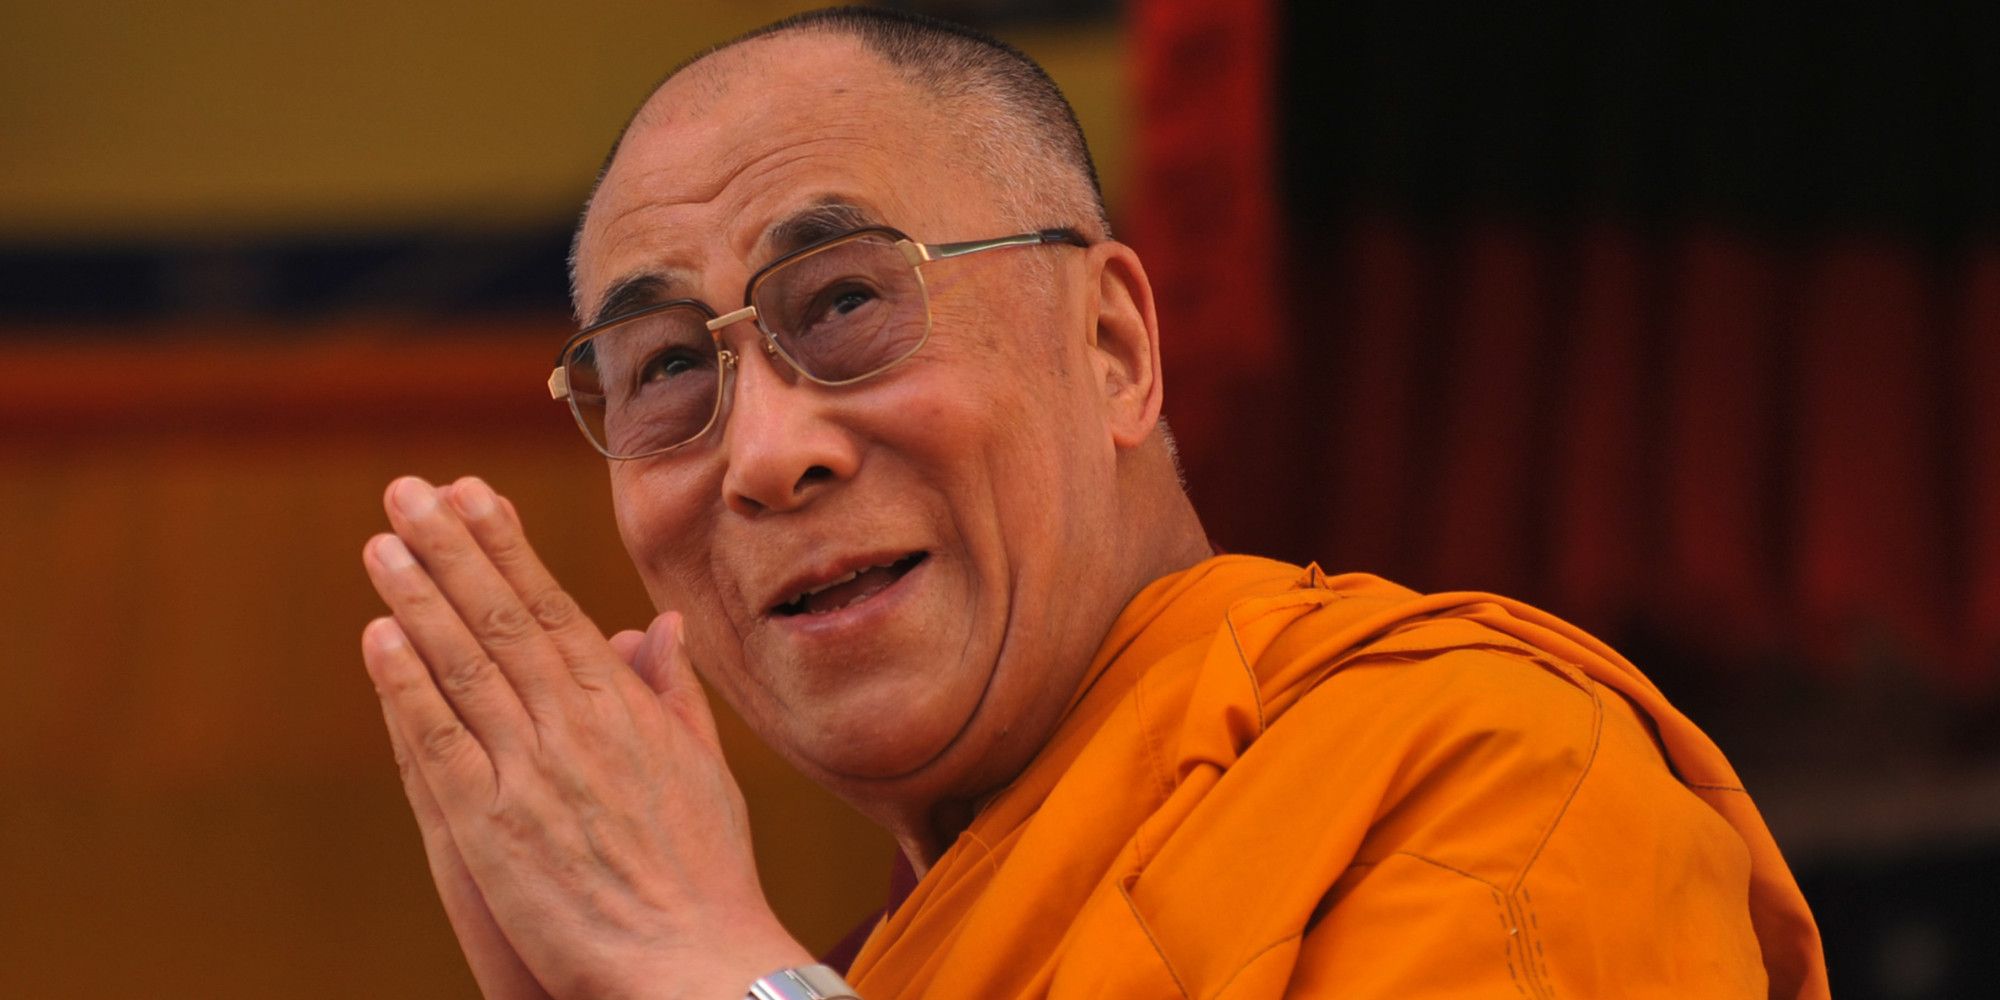 Le 20 frasi più significative del Dalai Lama